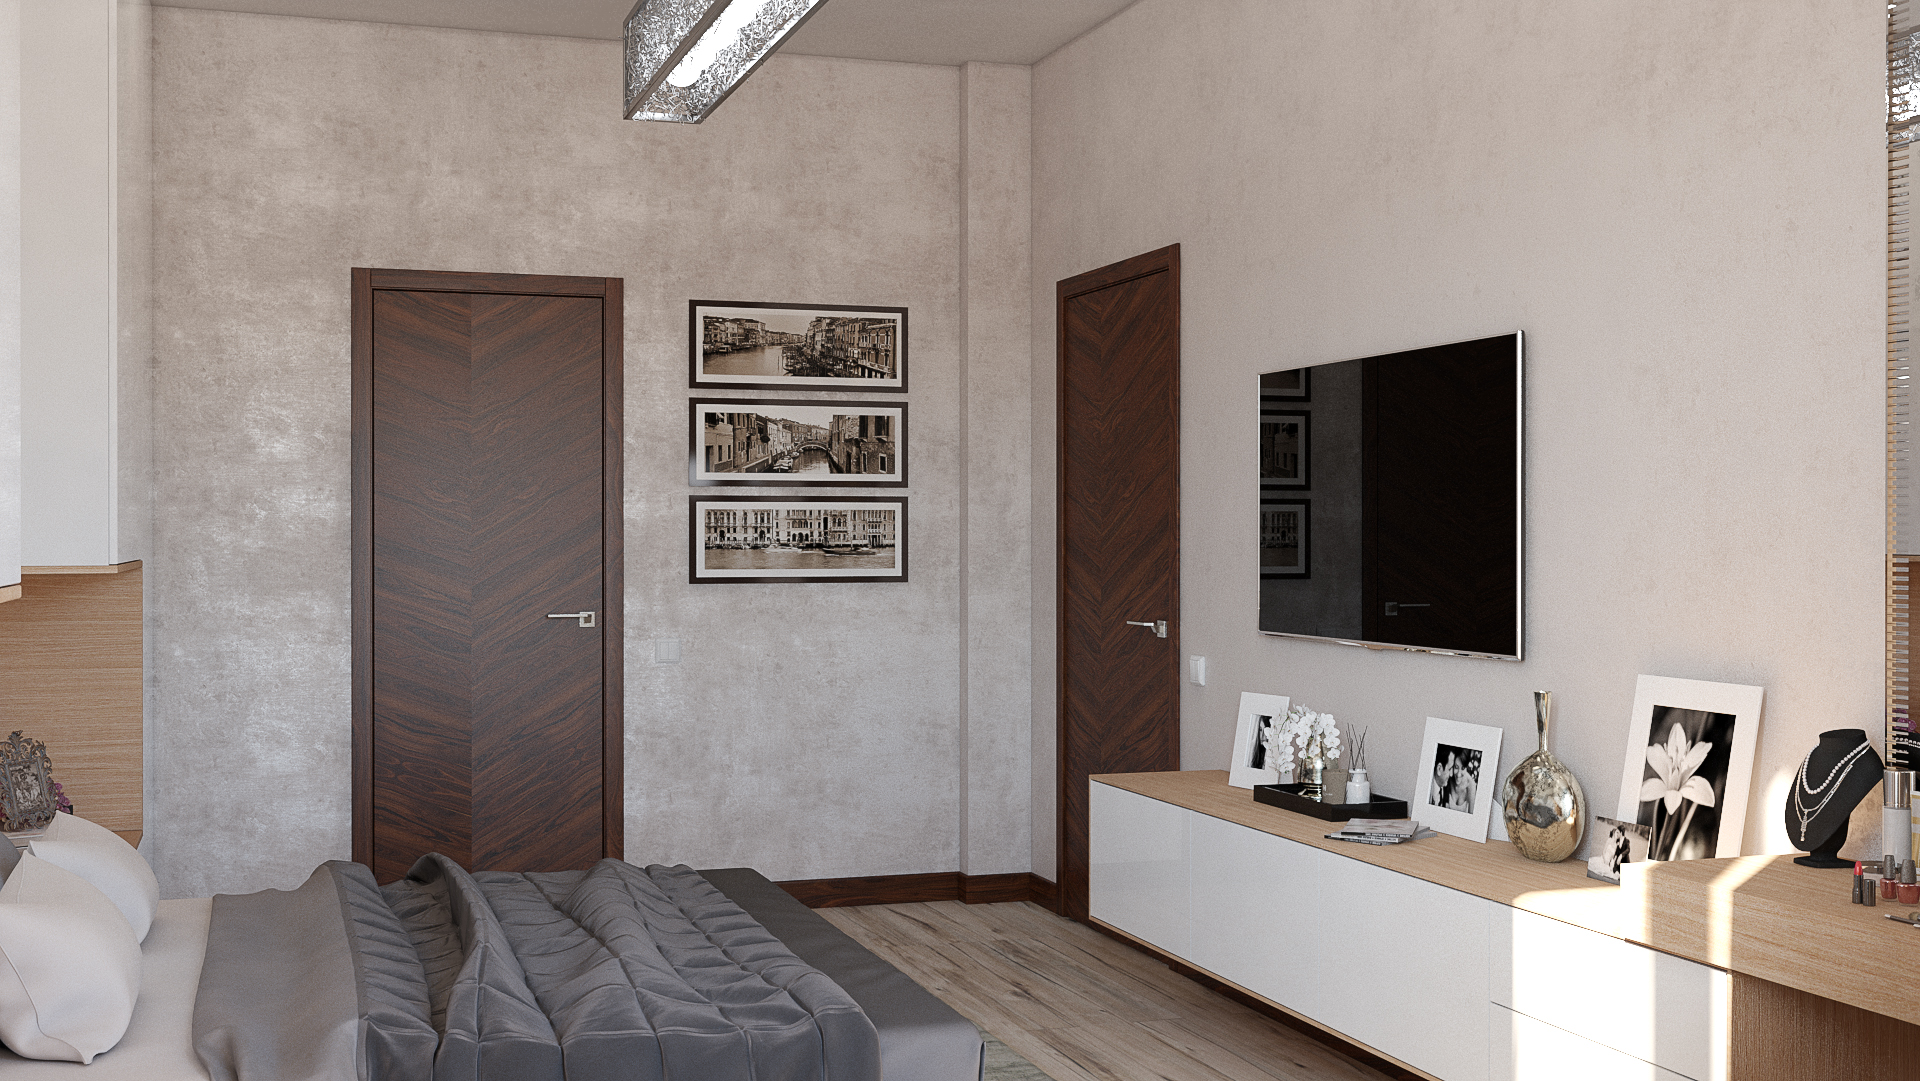 Chambre à coucher dans 3d max vray 3.0 image